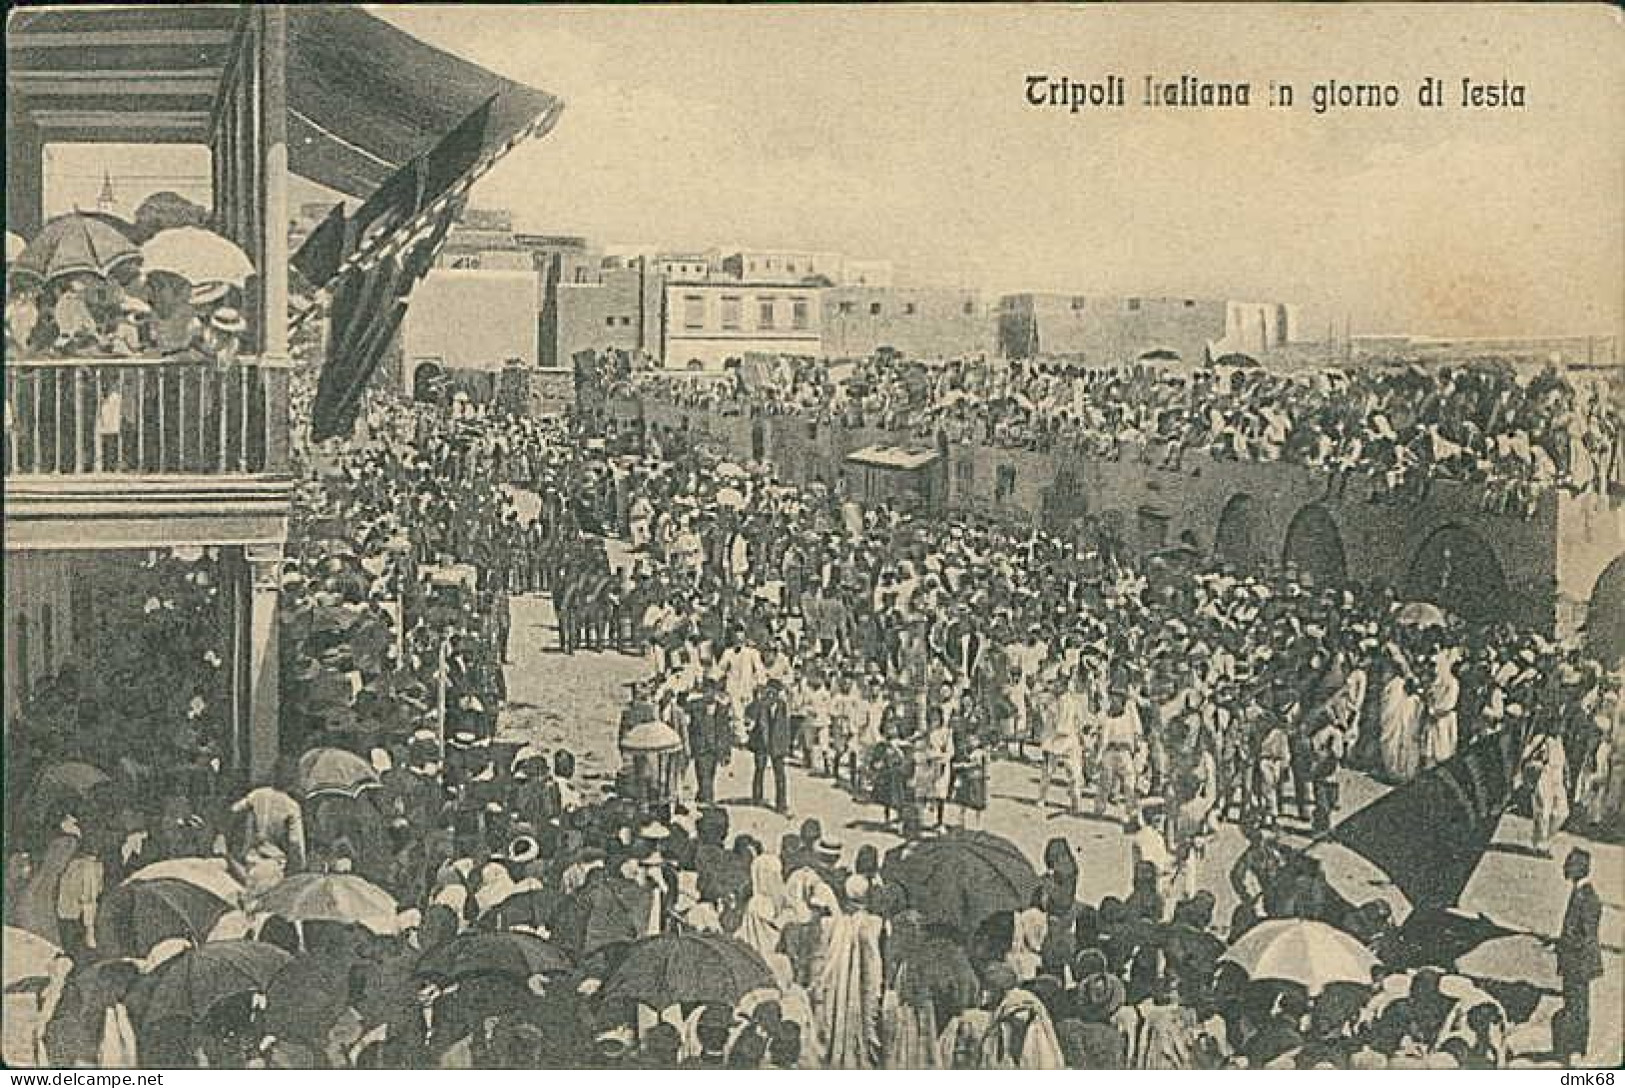 LIBIA / LIBYA - TRIPOLI ITALIANA IN GIORNO DI FESTA - ED. ALTEROCCA 1910s (12456) - Libye